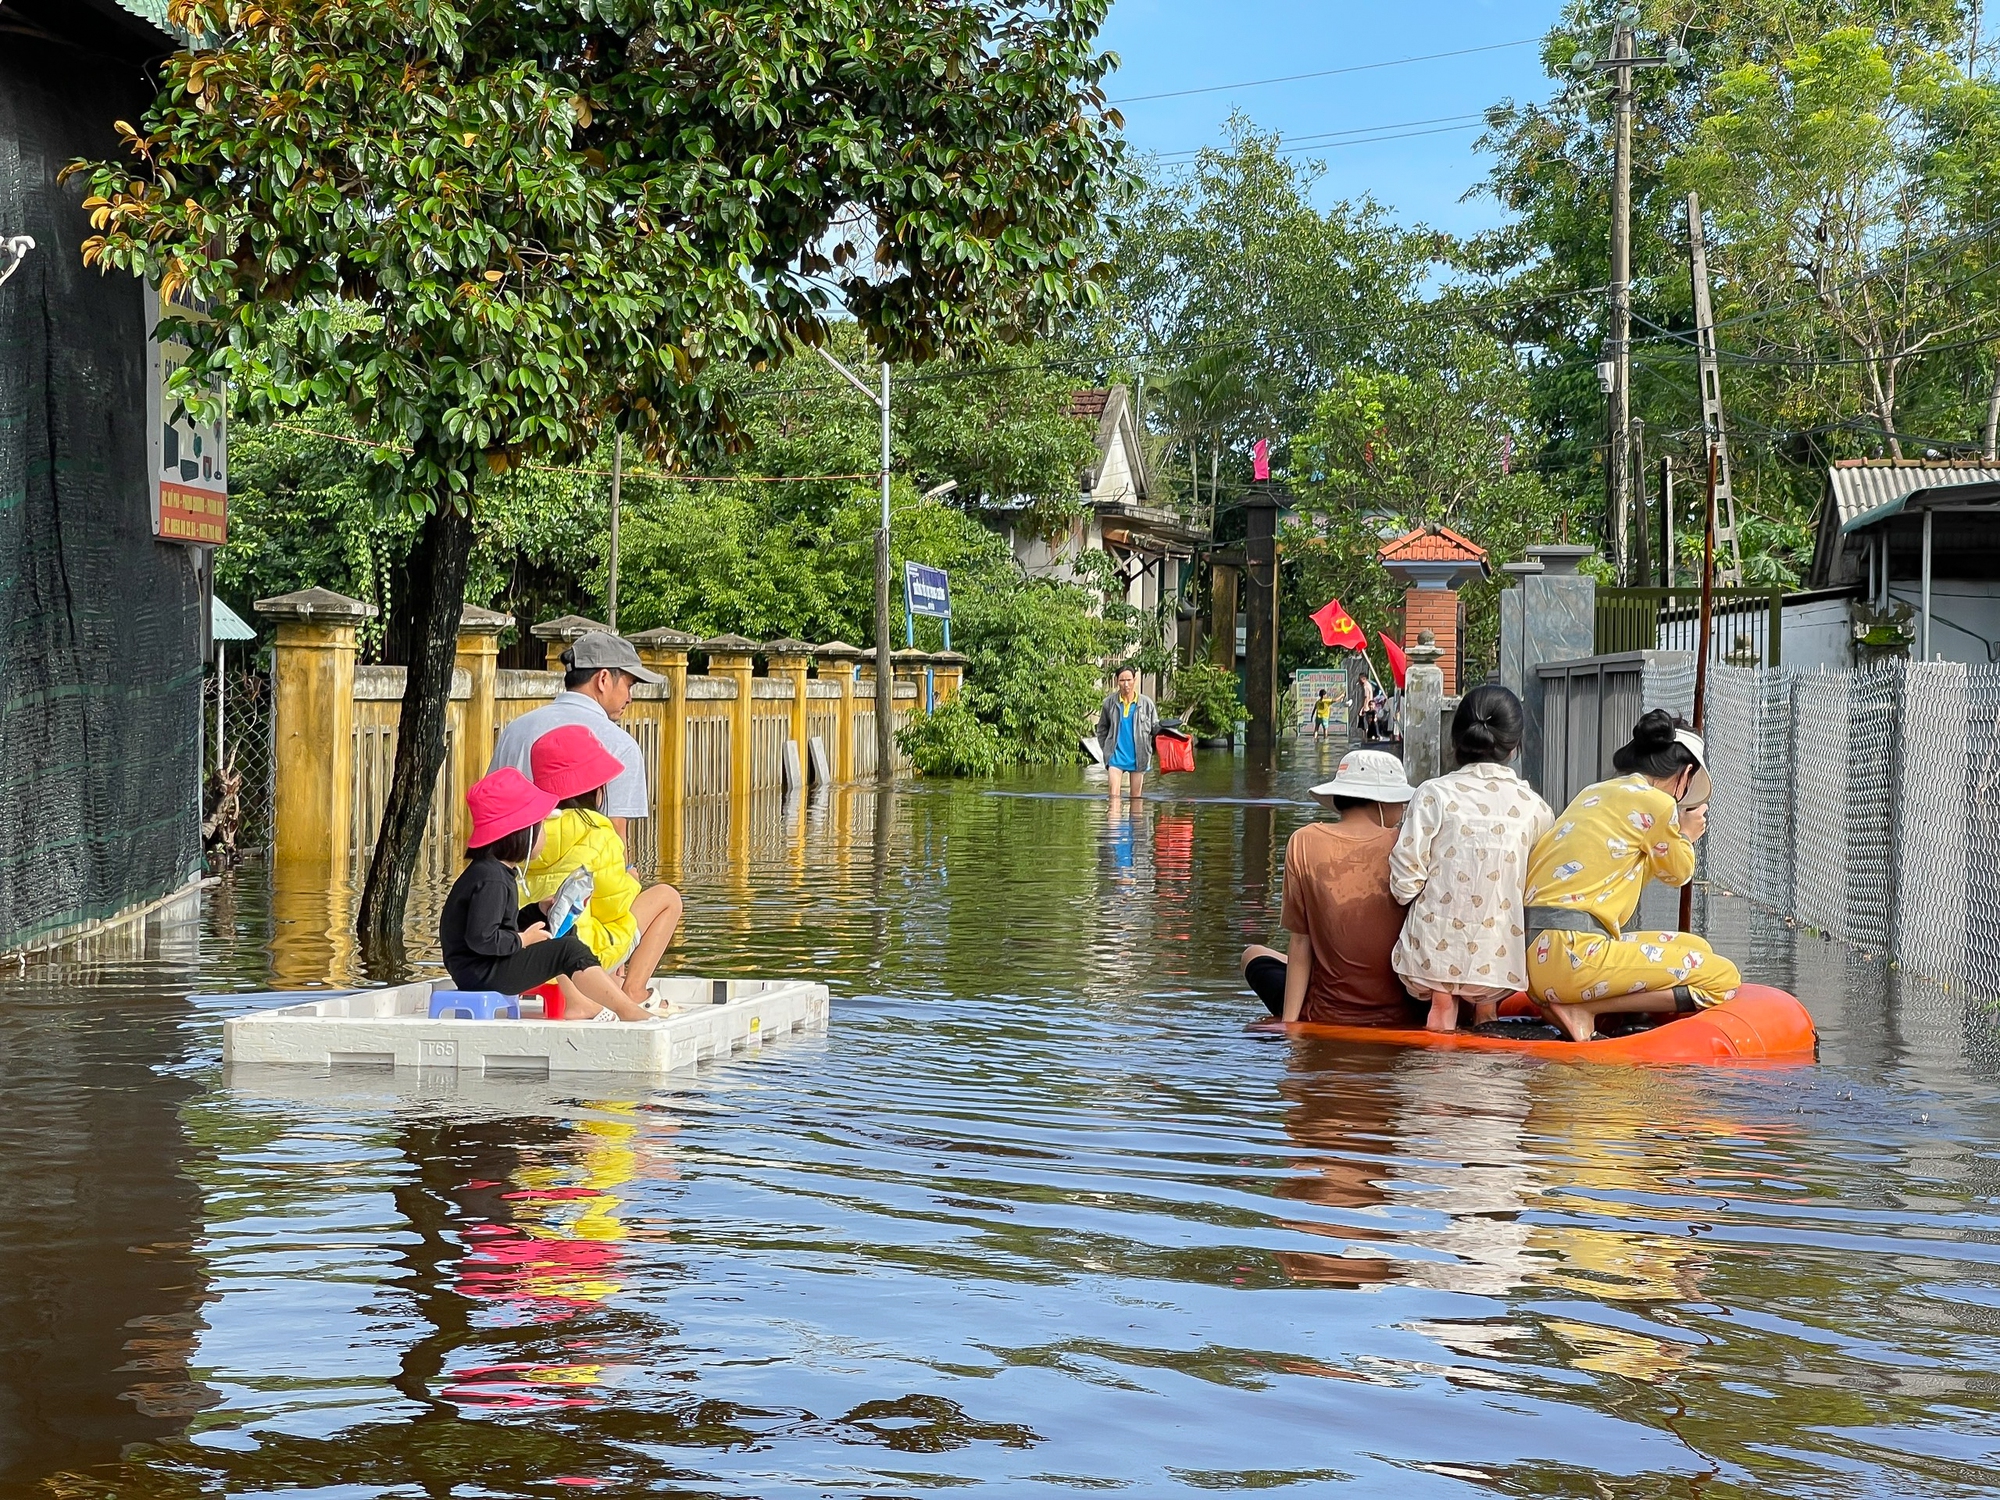 Mưa lũ miền Trung: Hình ảnh lũ lụt từ vùng ven tỉnh Thừa Thiên - Huế - Ảnh 1.